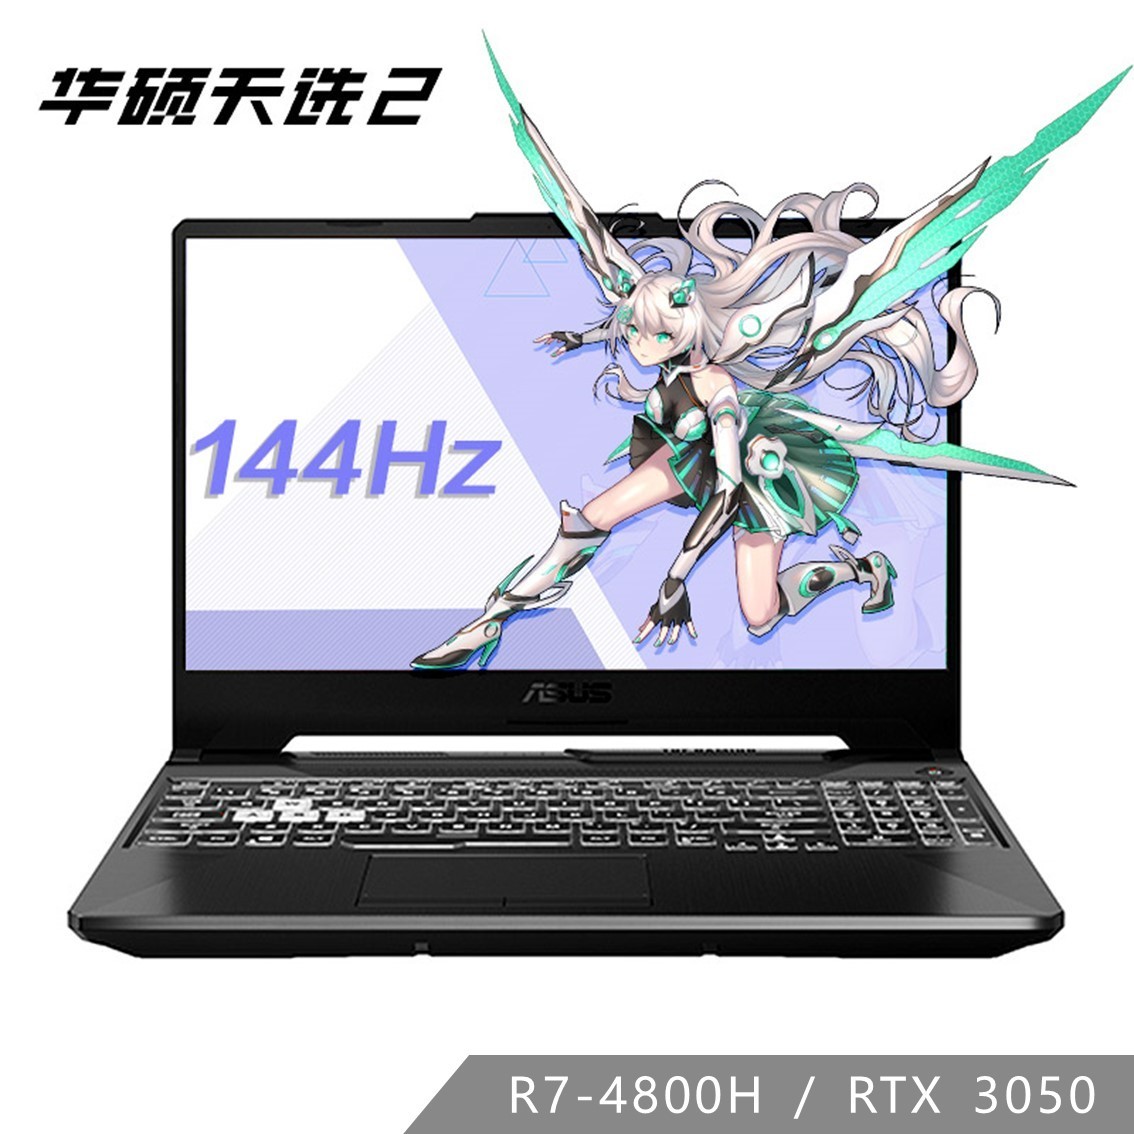 天选2 日蚀灰 锐龙R7 RTX3050 144Hz 游戏本笔记本电脑-15.6英寸（Windows 11 Home/R7-4800H/16GB/512G SSD/RTX 3050 4G）